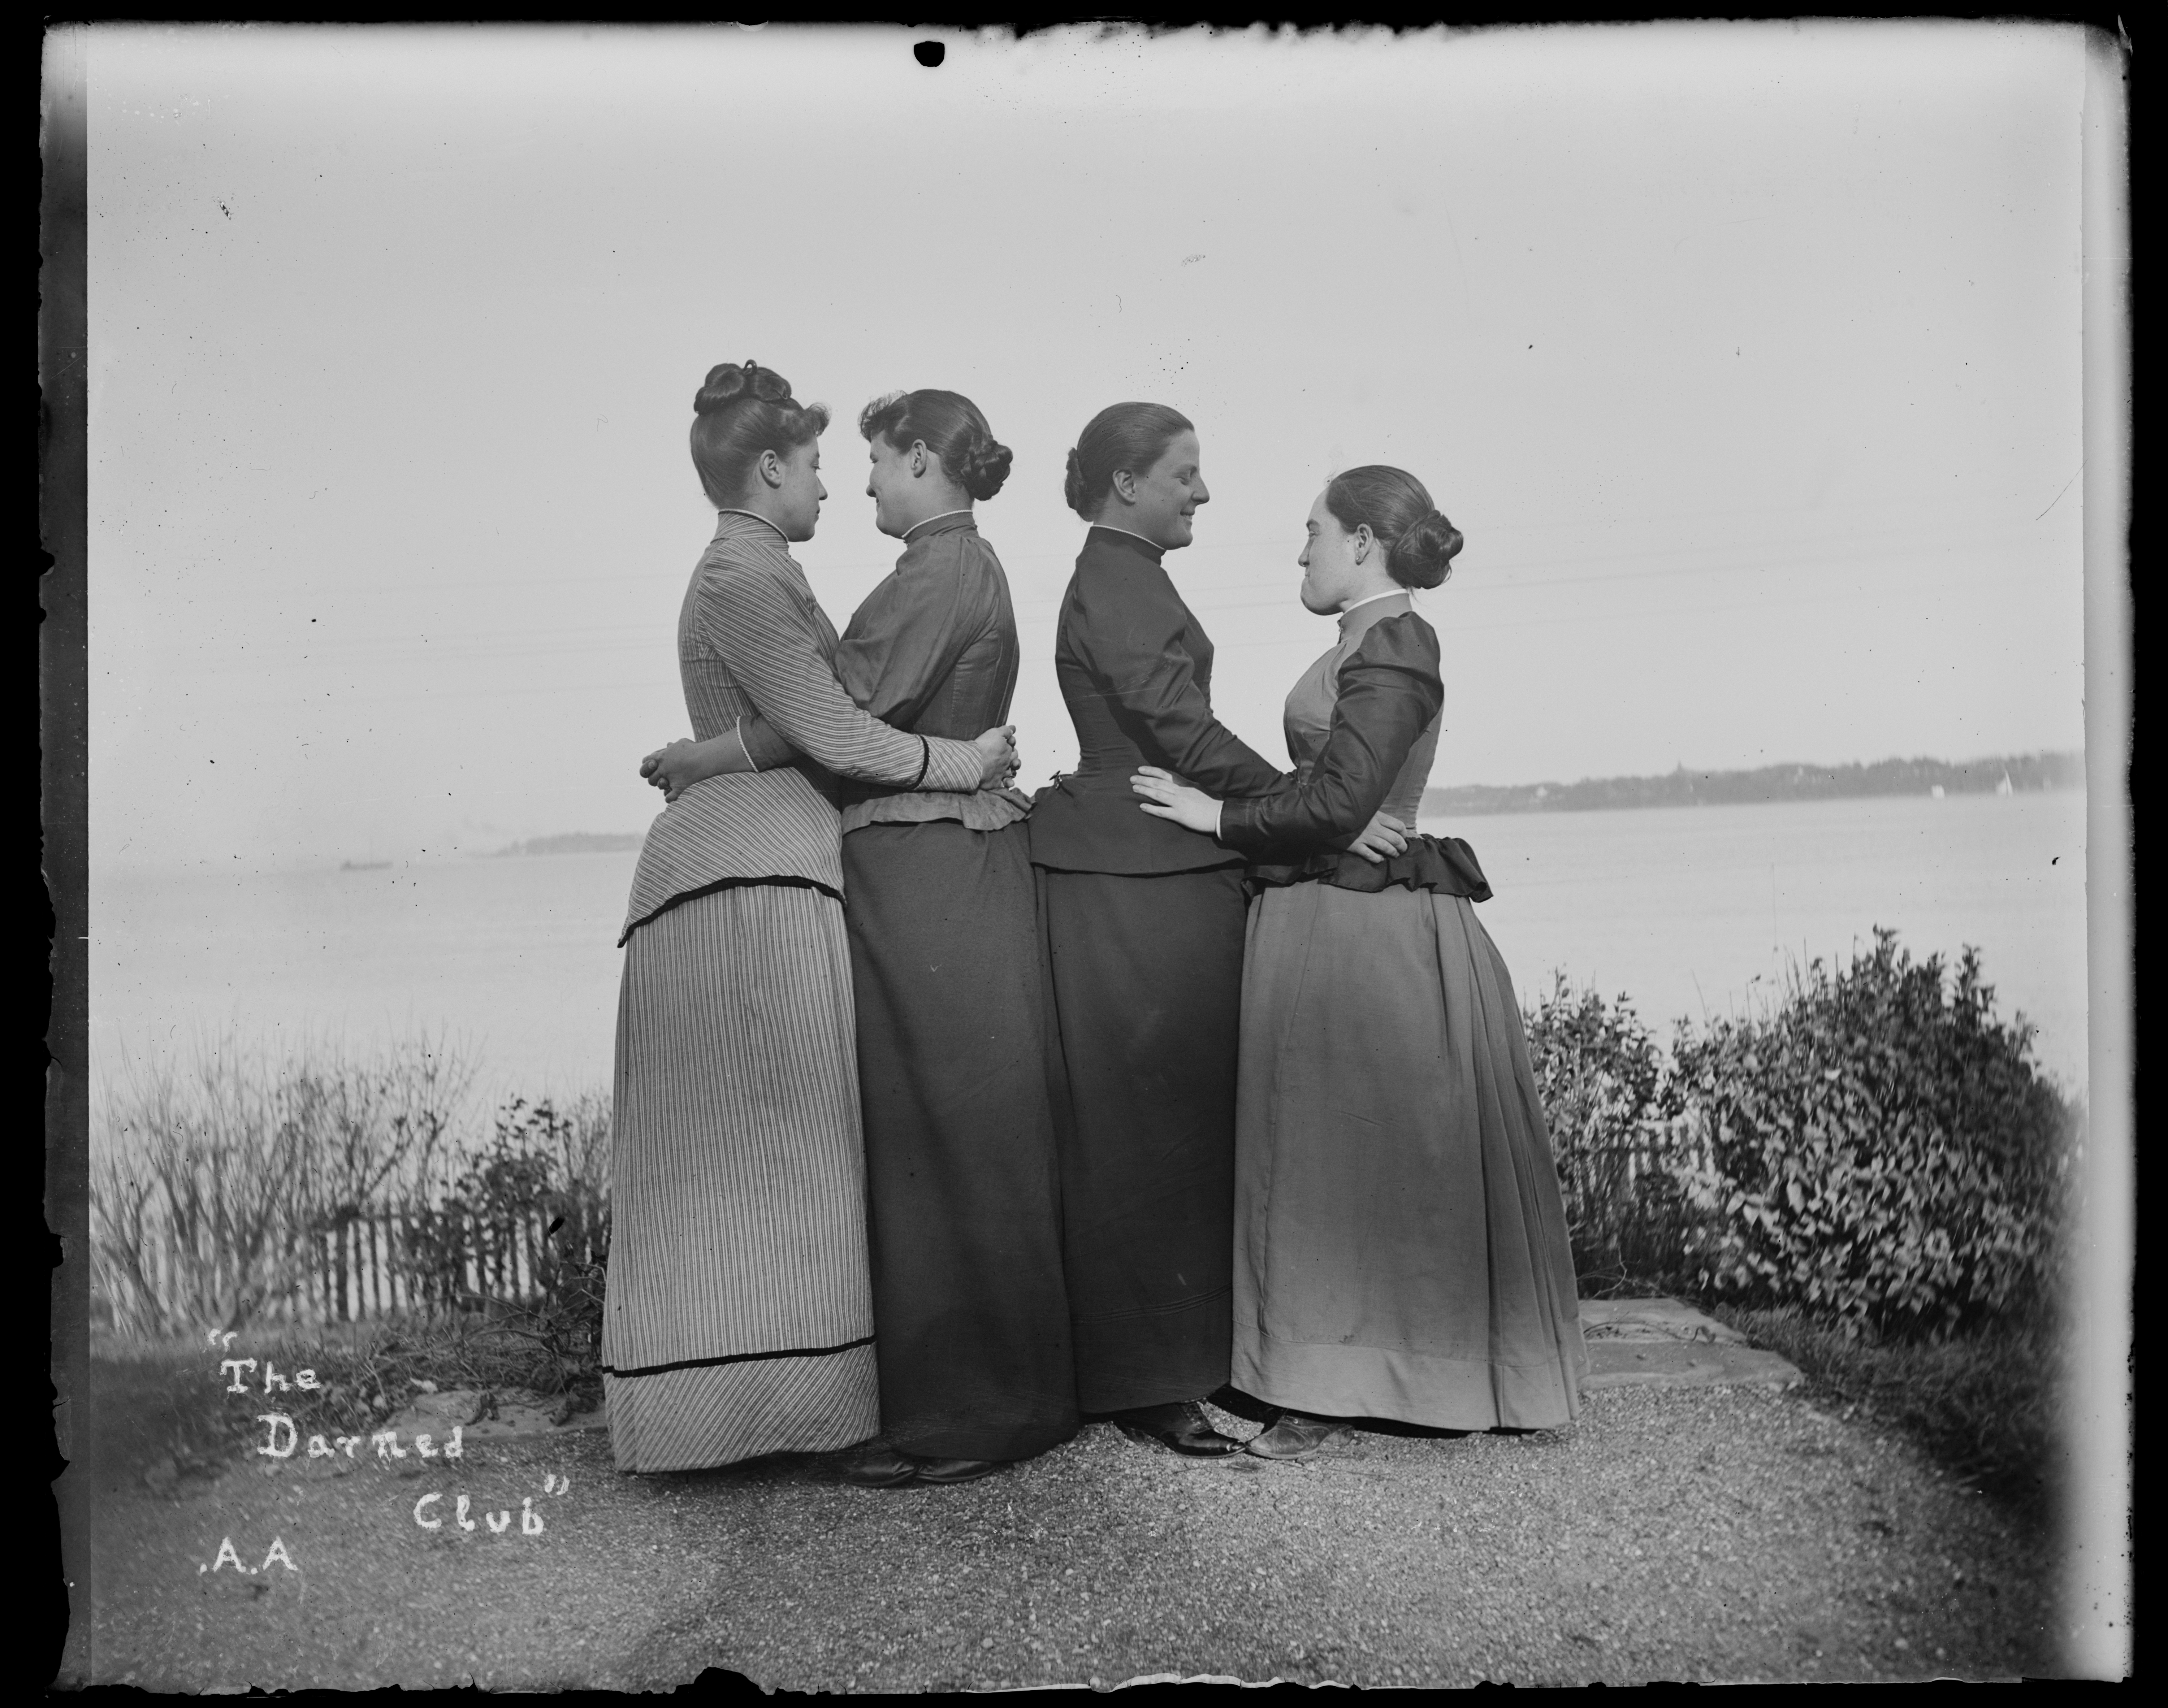 Una imagen de las mujeres de 'The Darned Club' (El maldito club), como se denominaba a sus reuniones, en octubre de 1891.